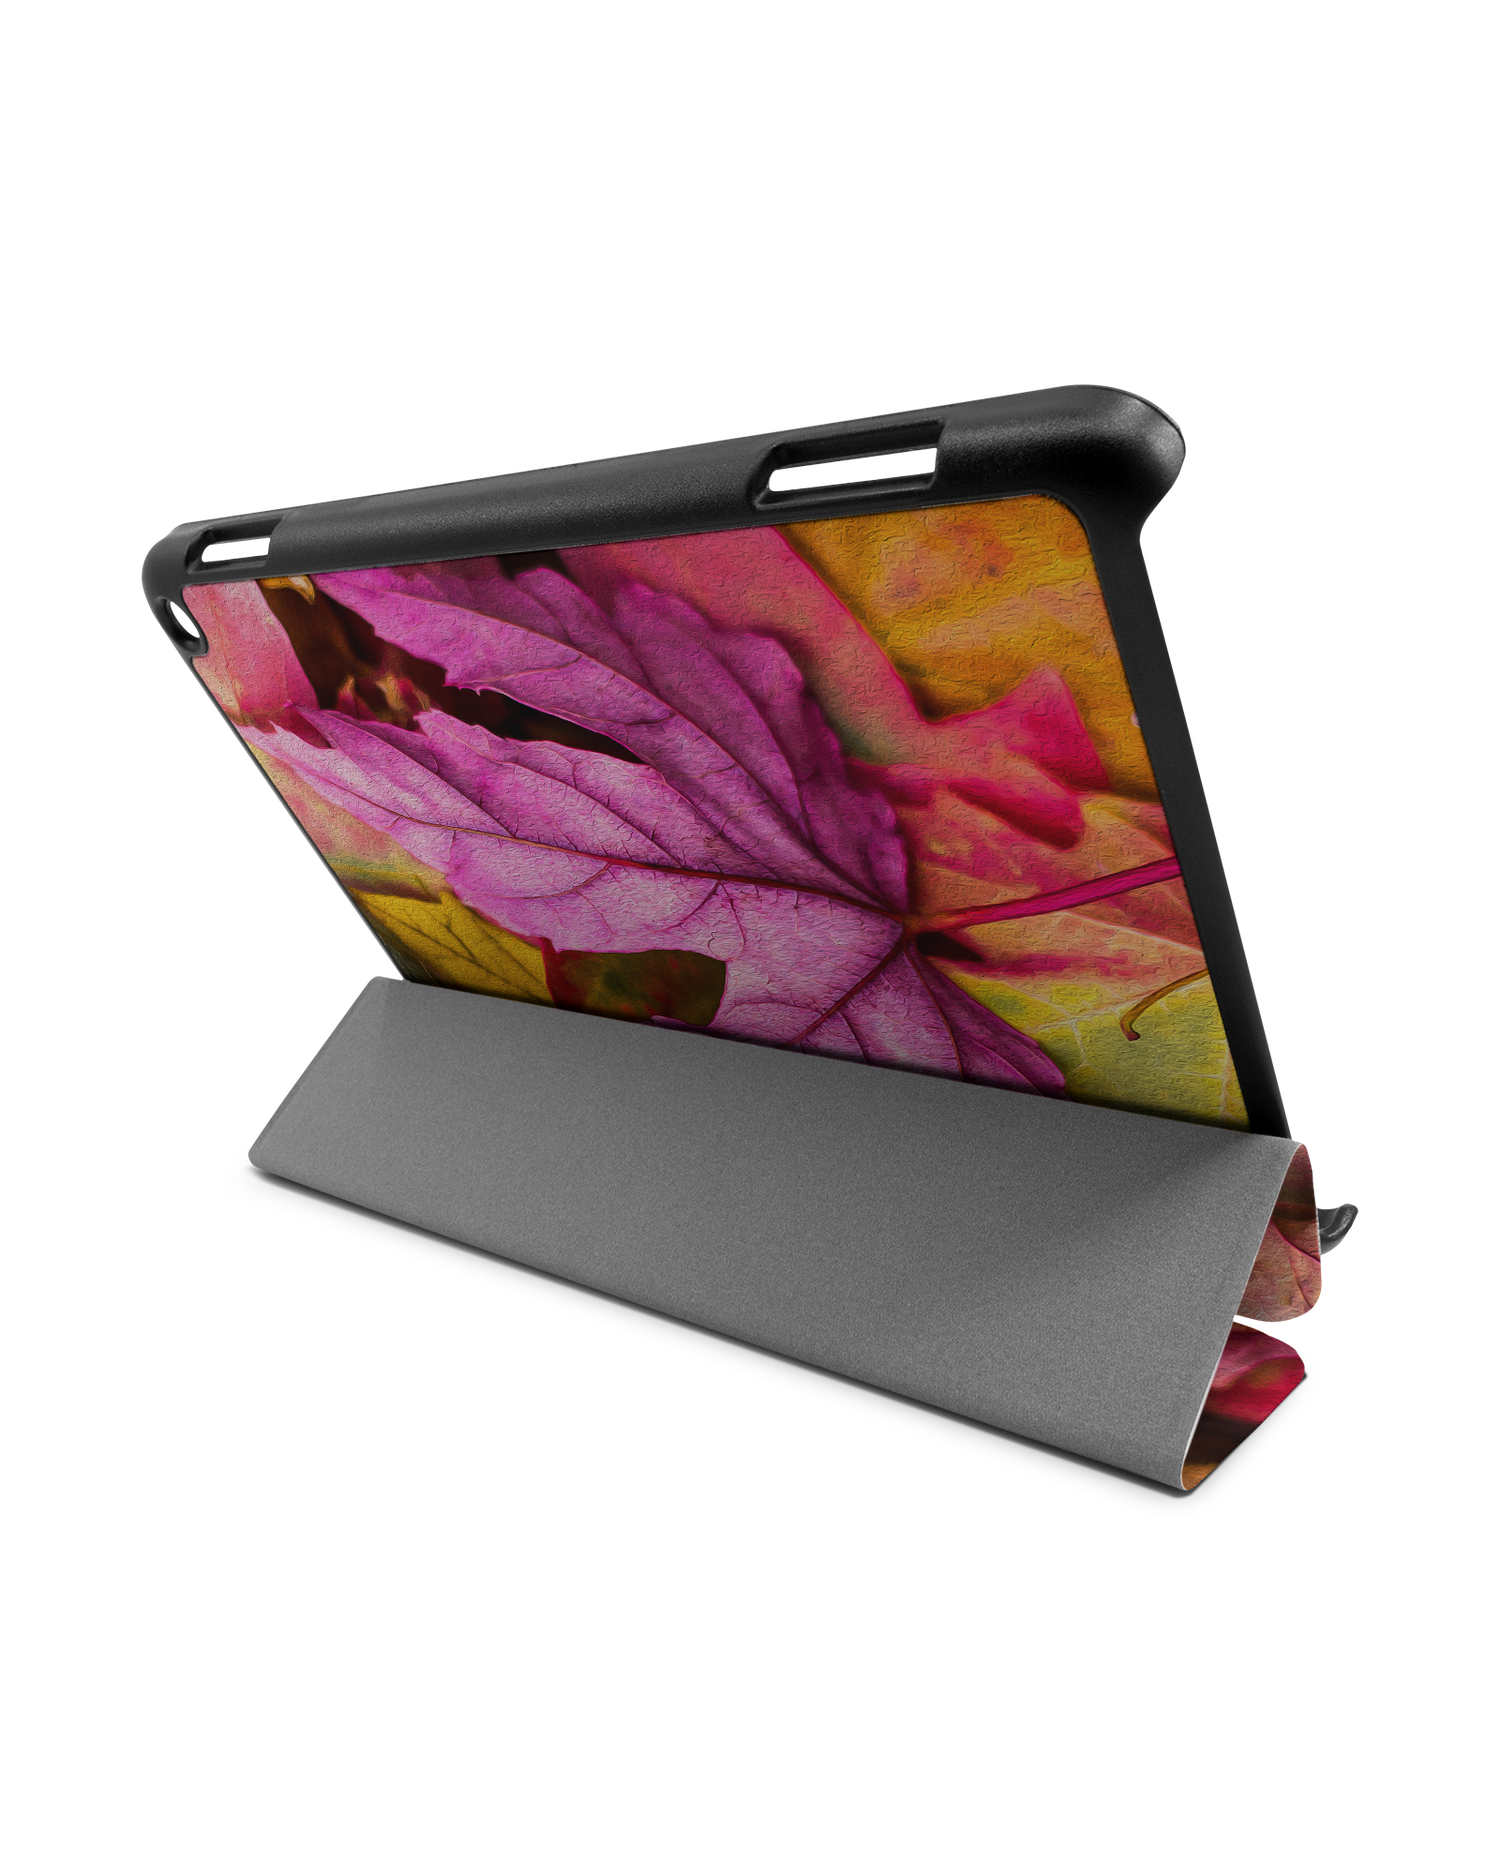 Autumn Leaves Tablet Smart Case für Amazon Fire HD 8 (2022), Amazon Fire HD 8 Plus (2022), Amazon Fire HD 8 (2020), Amazon Fire HD 8 Plus (2020): Aufgestellt im Querformat